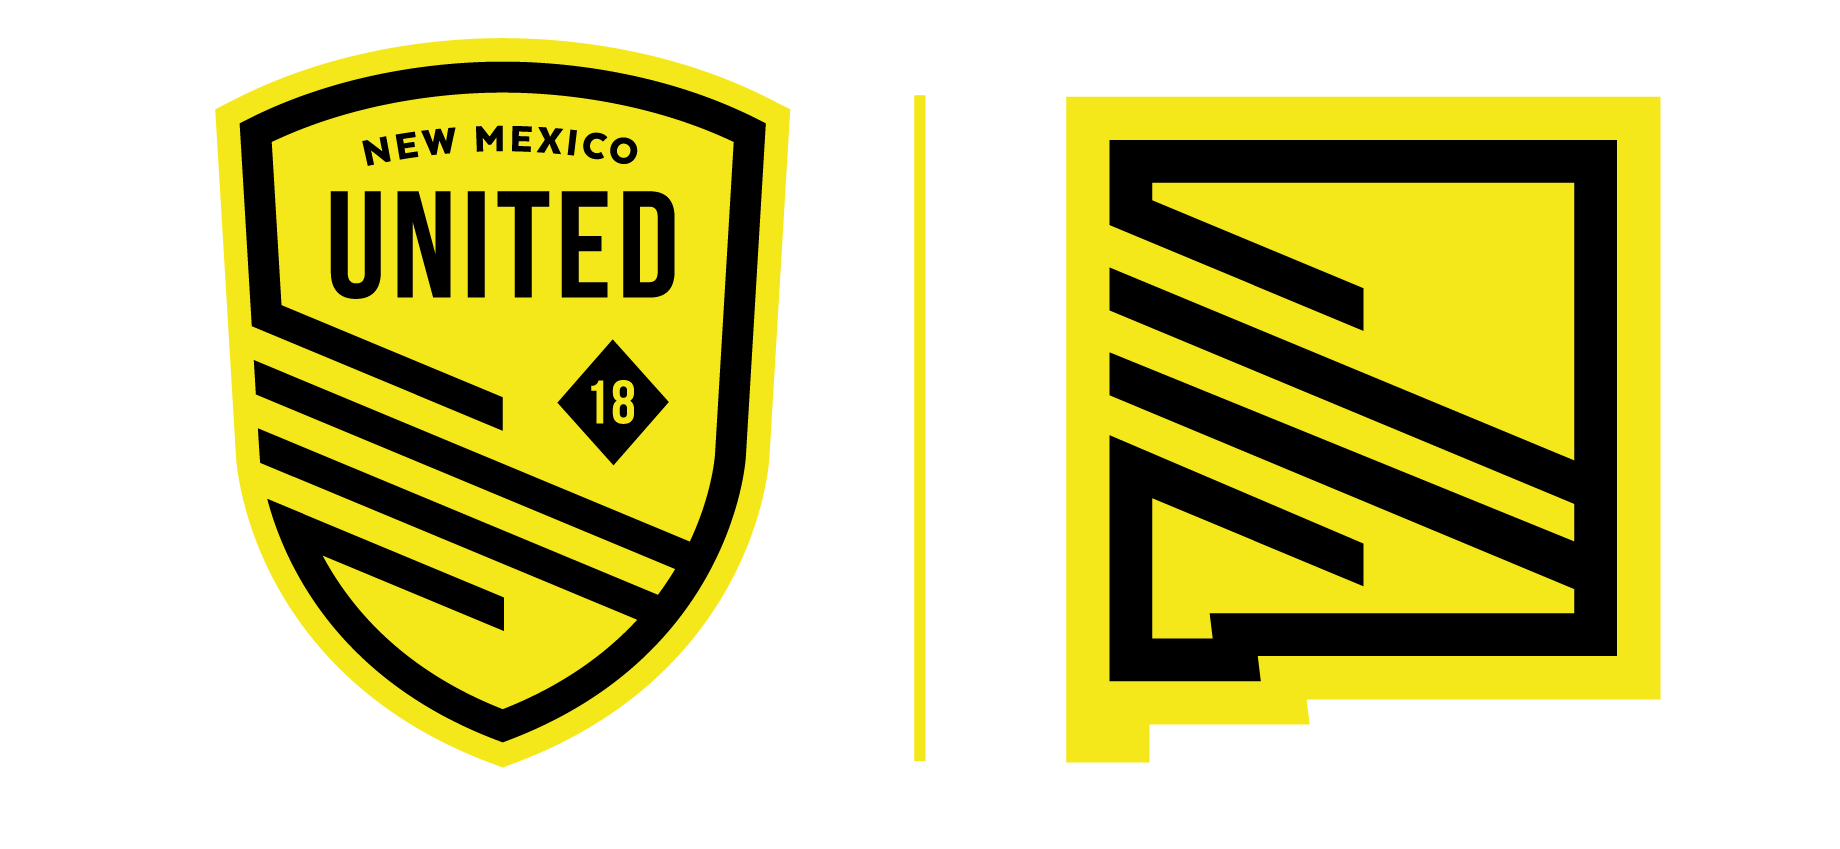 לוגו ניו מקסיקו יונייטד